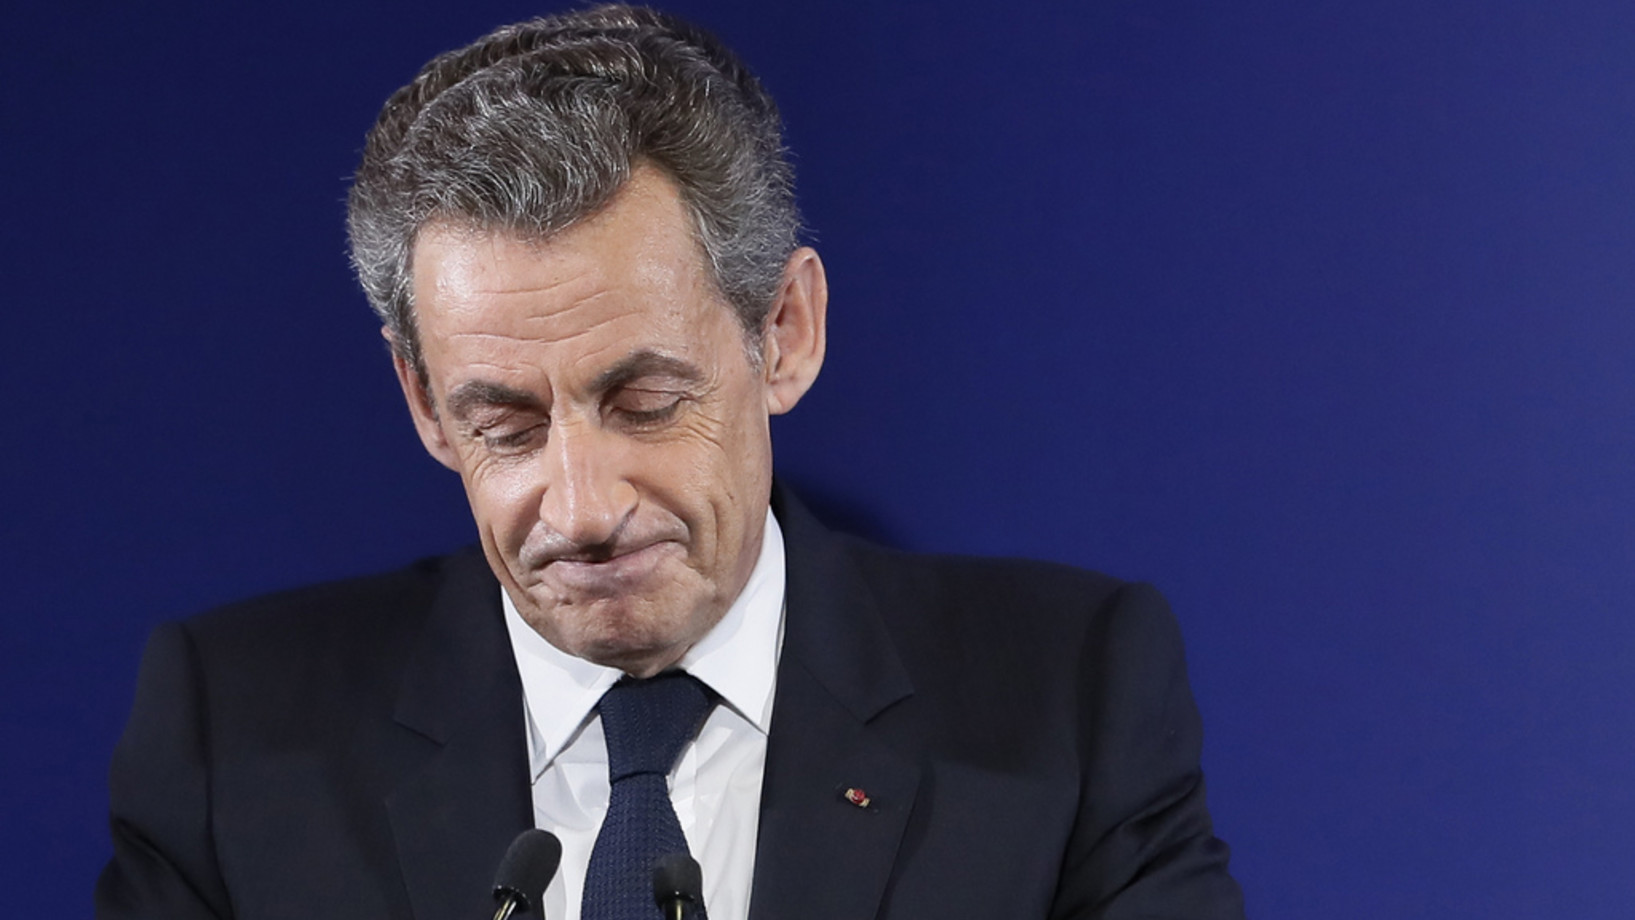 Nicolas Sarkozy, früherer Präsident und Bewerber für die Präsidentschaftskandidatur 2017, gesteht am 20. November in Paris seine Niederlage in den Vorwahlen der Partei „Les Républicains“ ein. (Foto: Keystone/AP EPA Pool, Ian Langsdon)